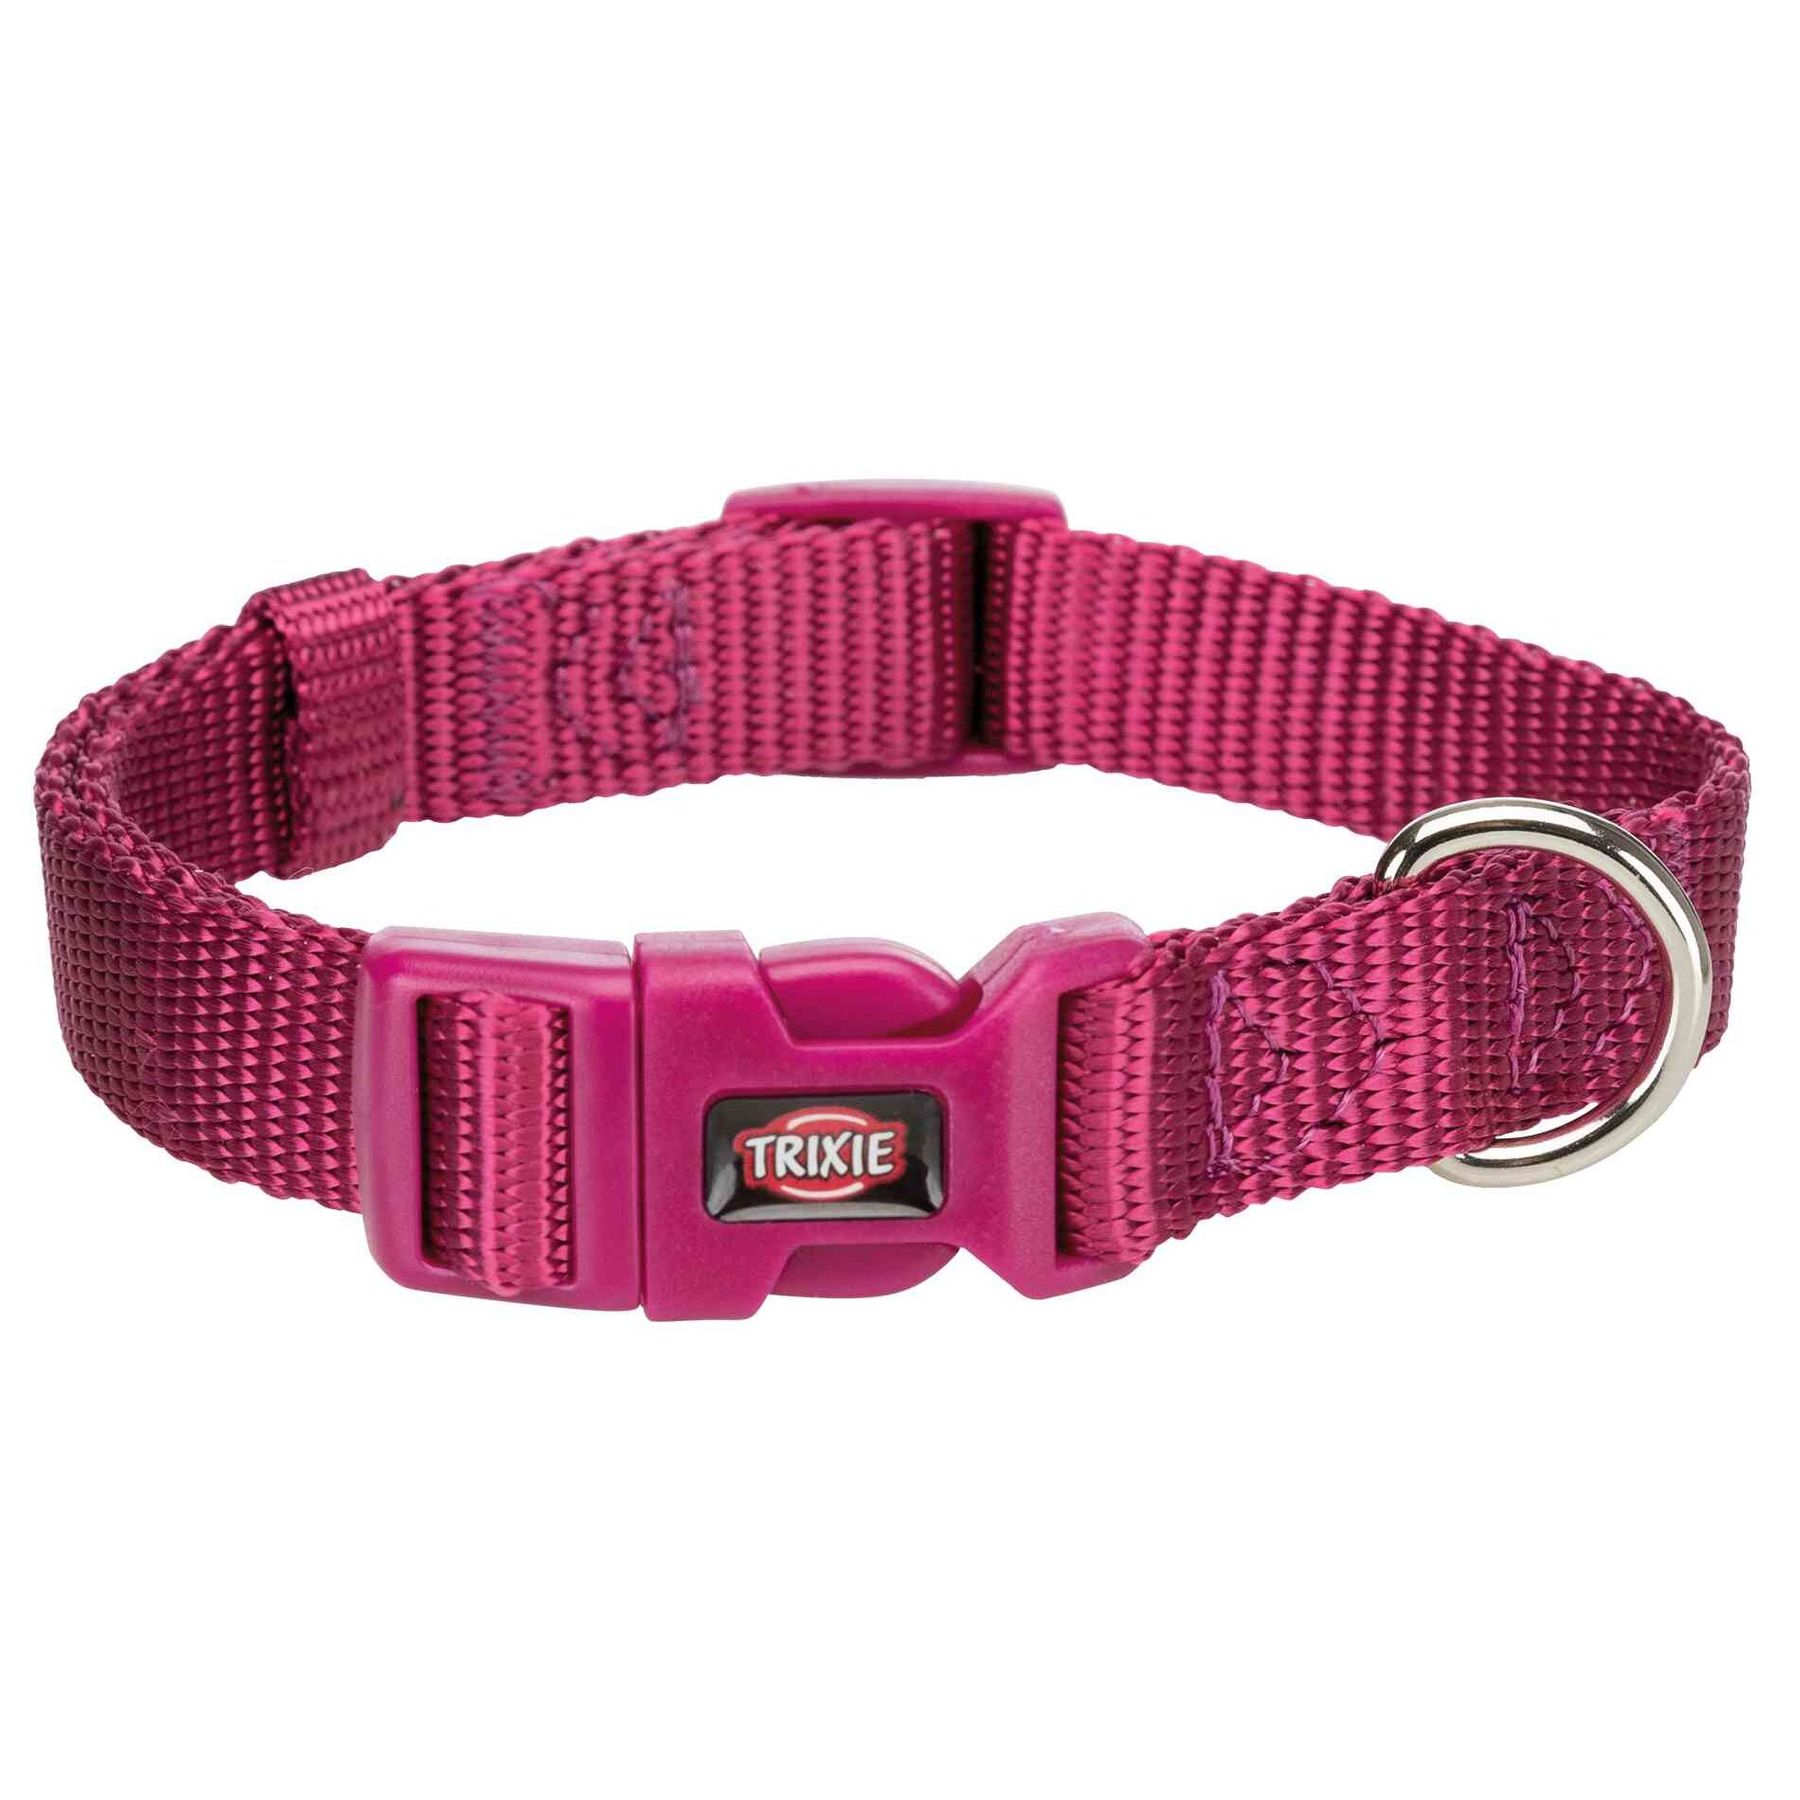 Нейлоновый ошейник для собак Trixie Premium S 25-40 см / 15 мм (розовый)